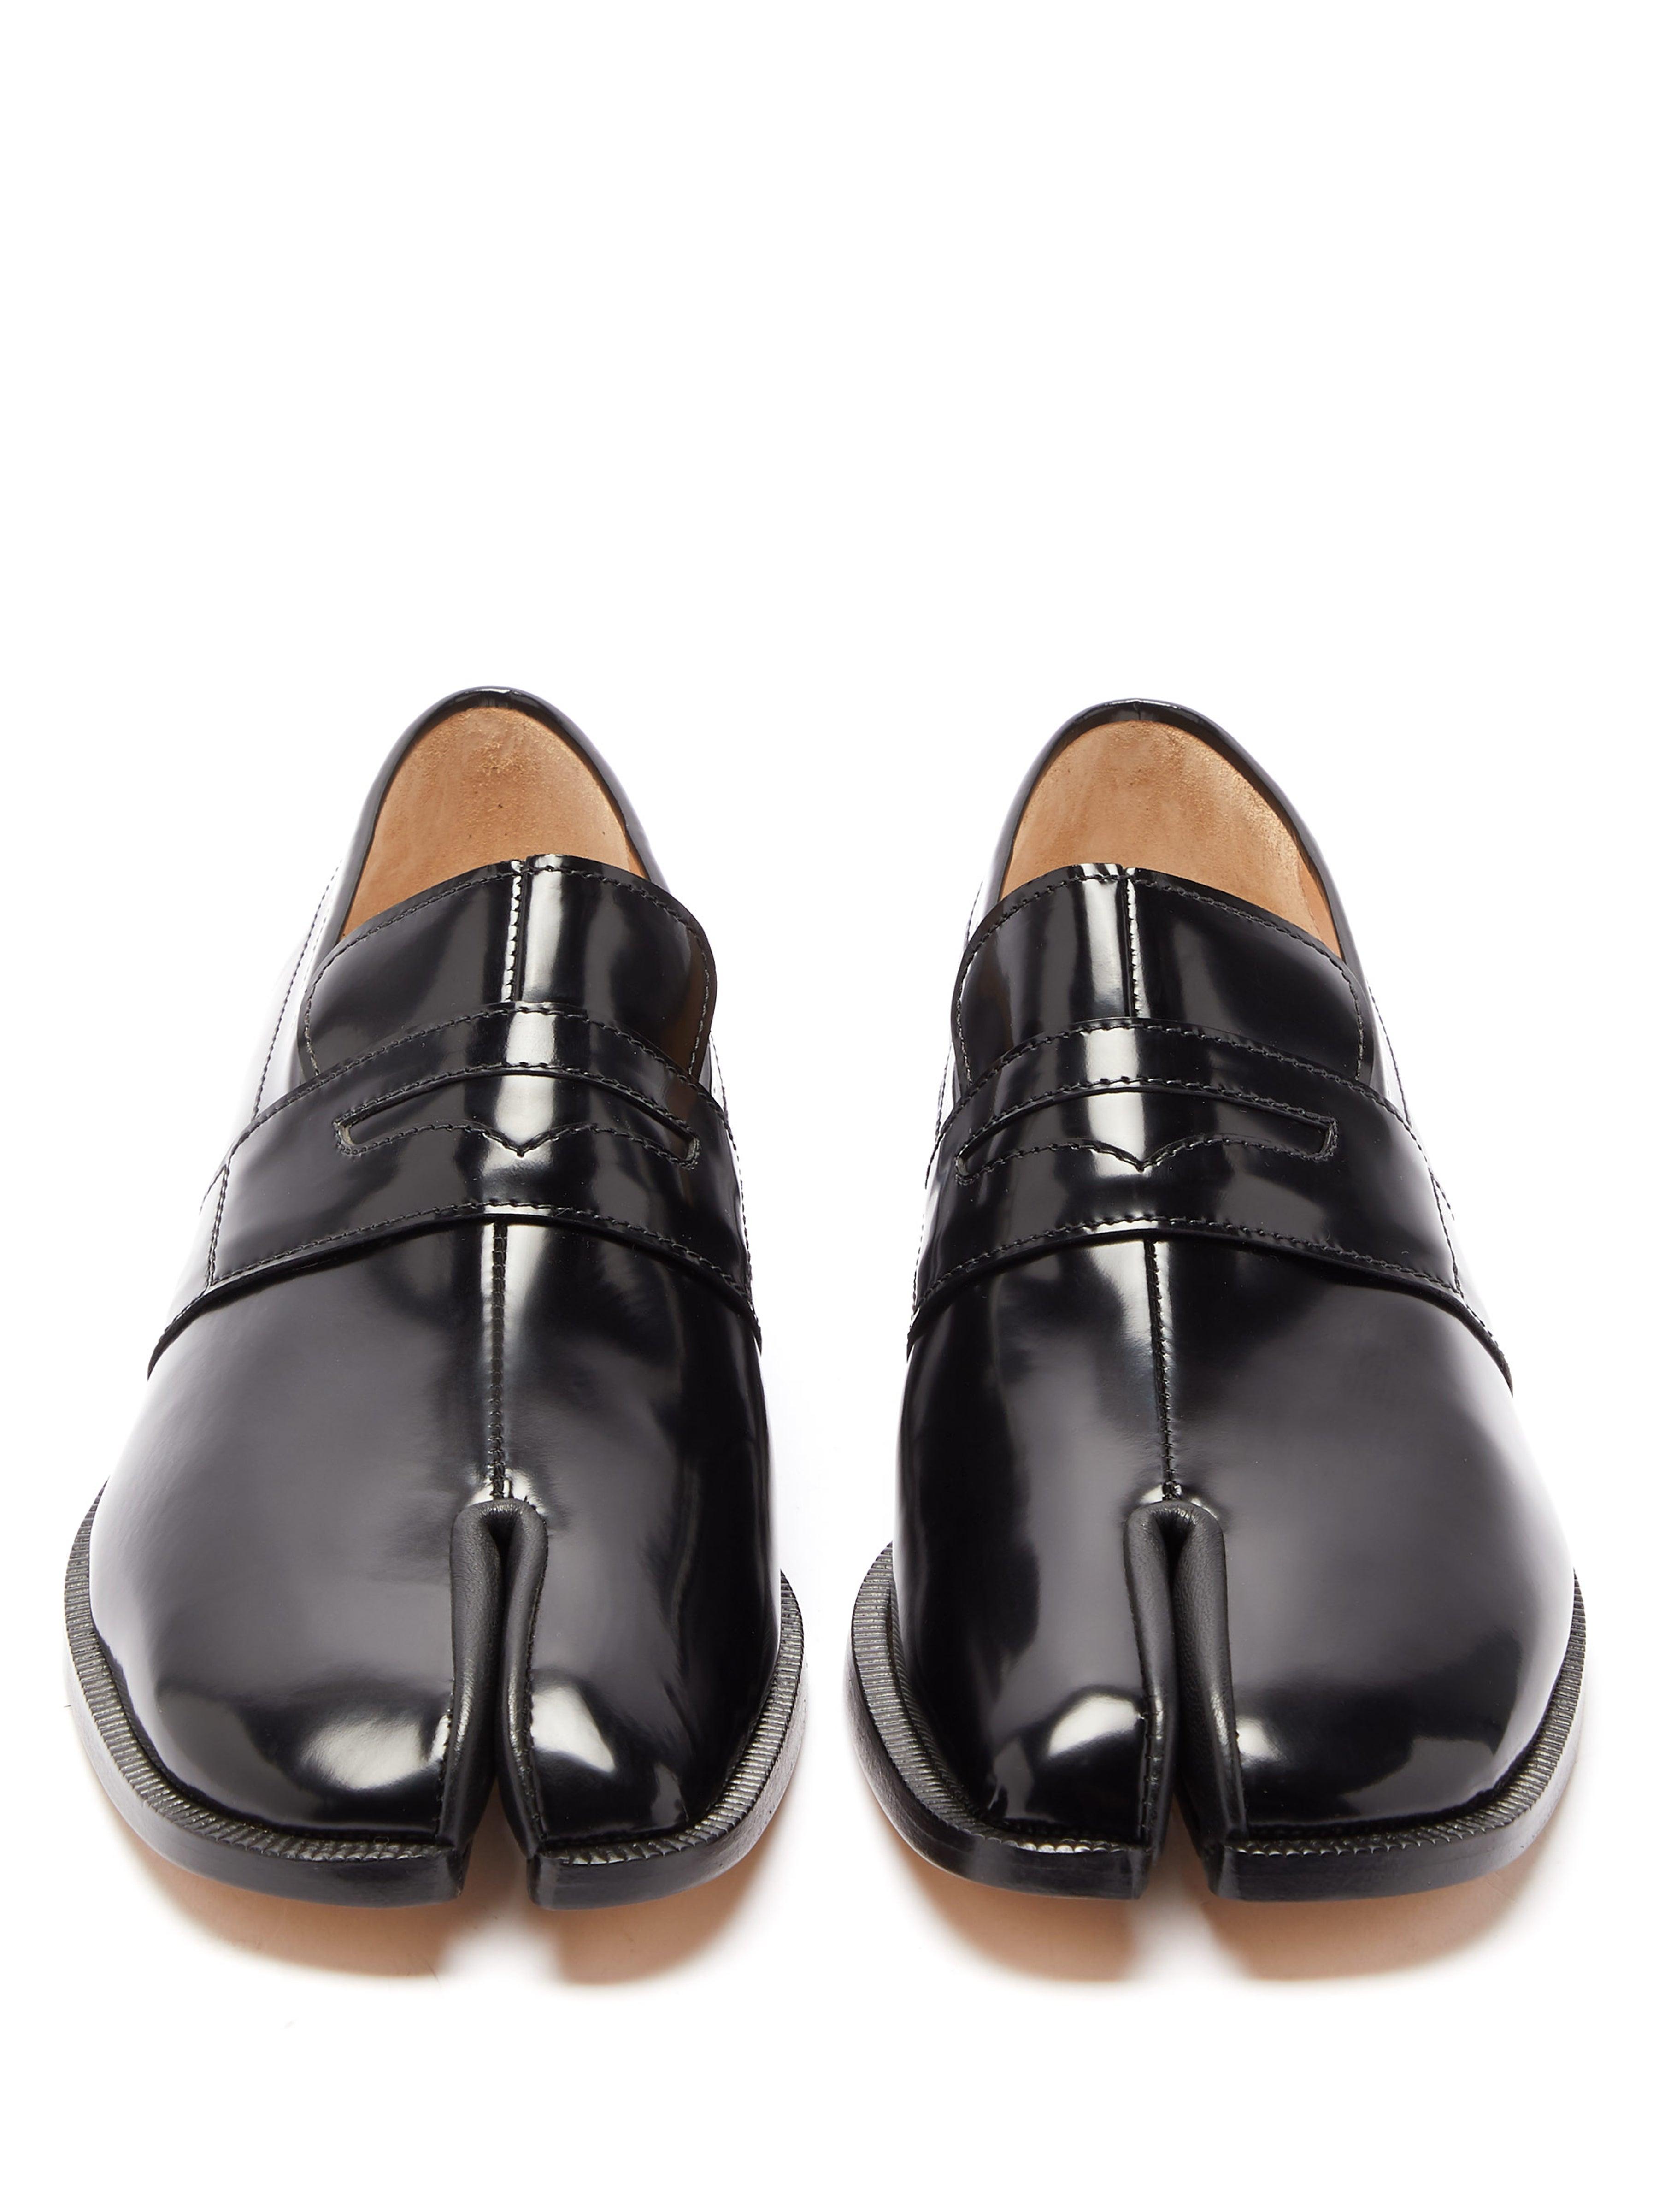 Maison Margiela Tabi Split Toe Leather Loafers in Black - Lyst